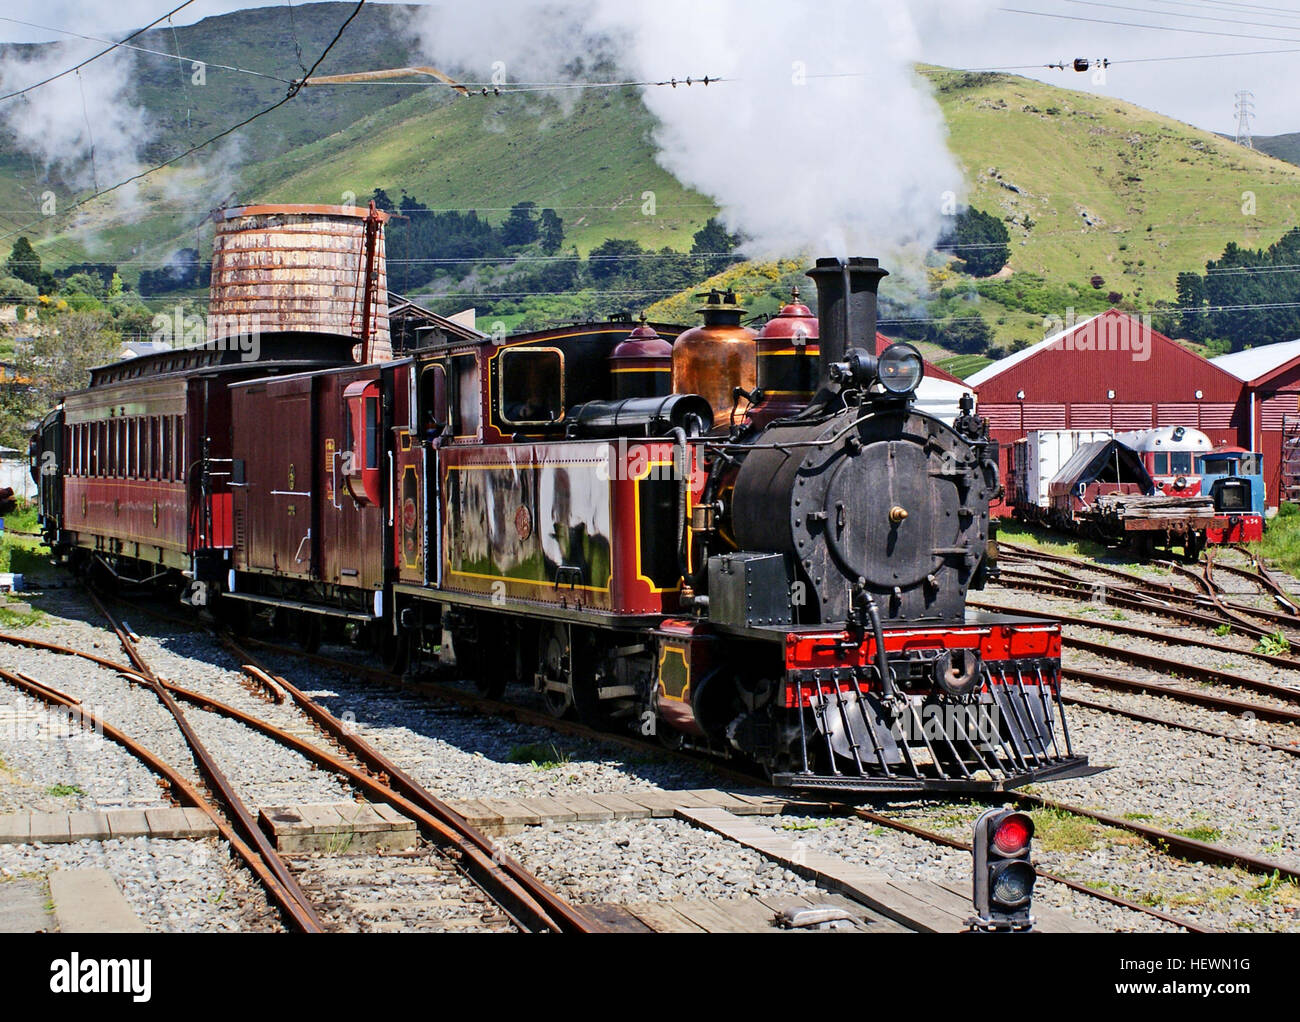 Wd357 è l'unico superstite di funzionamento di 111 locomotiva Baldwin locomotive di opere che sono state utilizzate in Nuova Zelanda. Infatti per un numero di anni WD357 era l'unico superstite Baldwin locomotore ferroviario di qualsiasi classe (diversi altri Baldwins da allora sono stati recuperati dalla locomotiva dump). Uno dei 18 di una classe costruita nel 1901, WD357 è uno dei quattro originariamente assegnati al South Island servizio. La RM di classe è stata versatile, lavorano tutti i tipi di treni in servizio regolare con la Nuova Zelanda governo ferrovie fino al 1935, quando entrò in servizio con il porto di Timaru Board, lavorando la sua cava fino a 196 Foto Stock